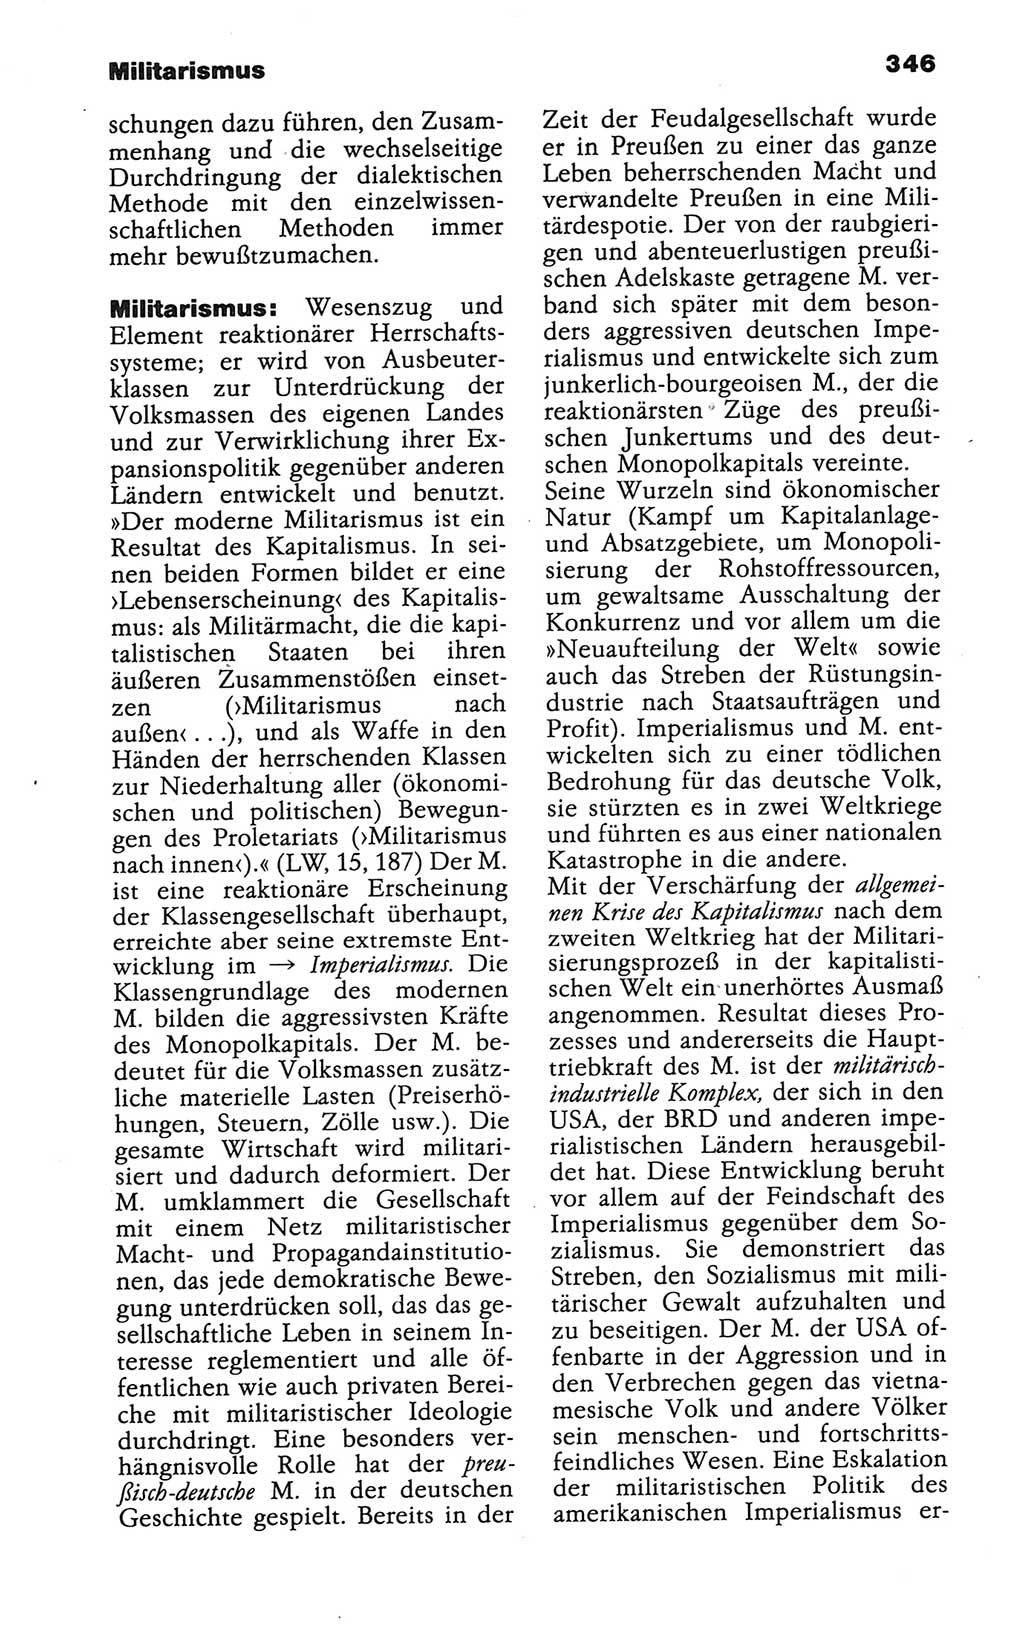 Wörterbuch der marxistisch-leninistischen Philosophie [Deutsche Demokratische Republik (DDR)] 1986, Seite 346 (Wb. ML Phil. DDR 1986, S. 346)